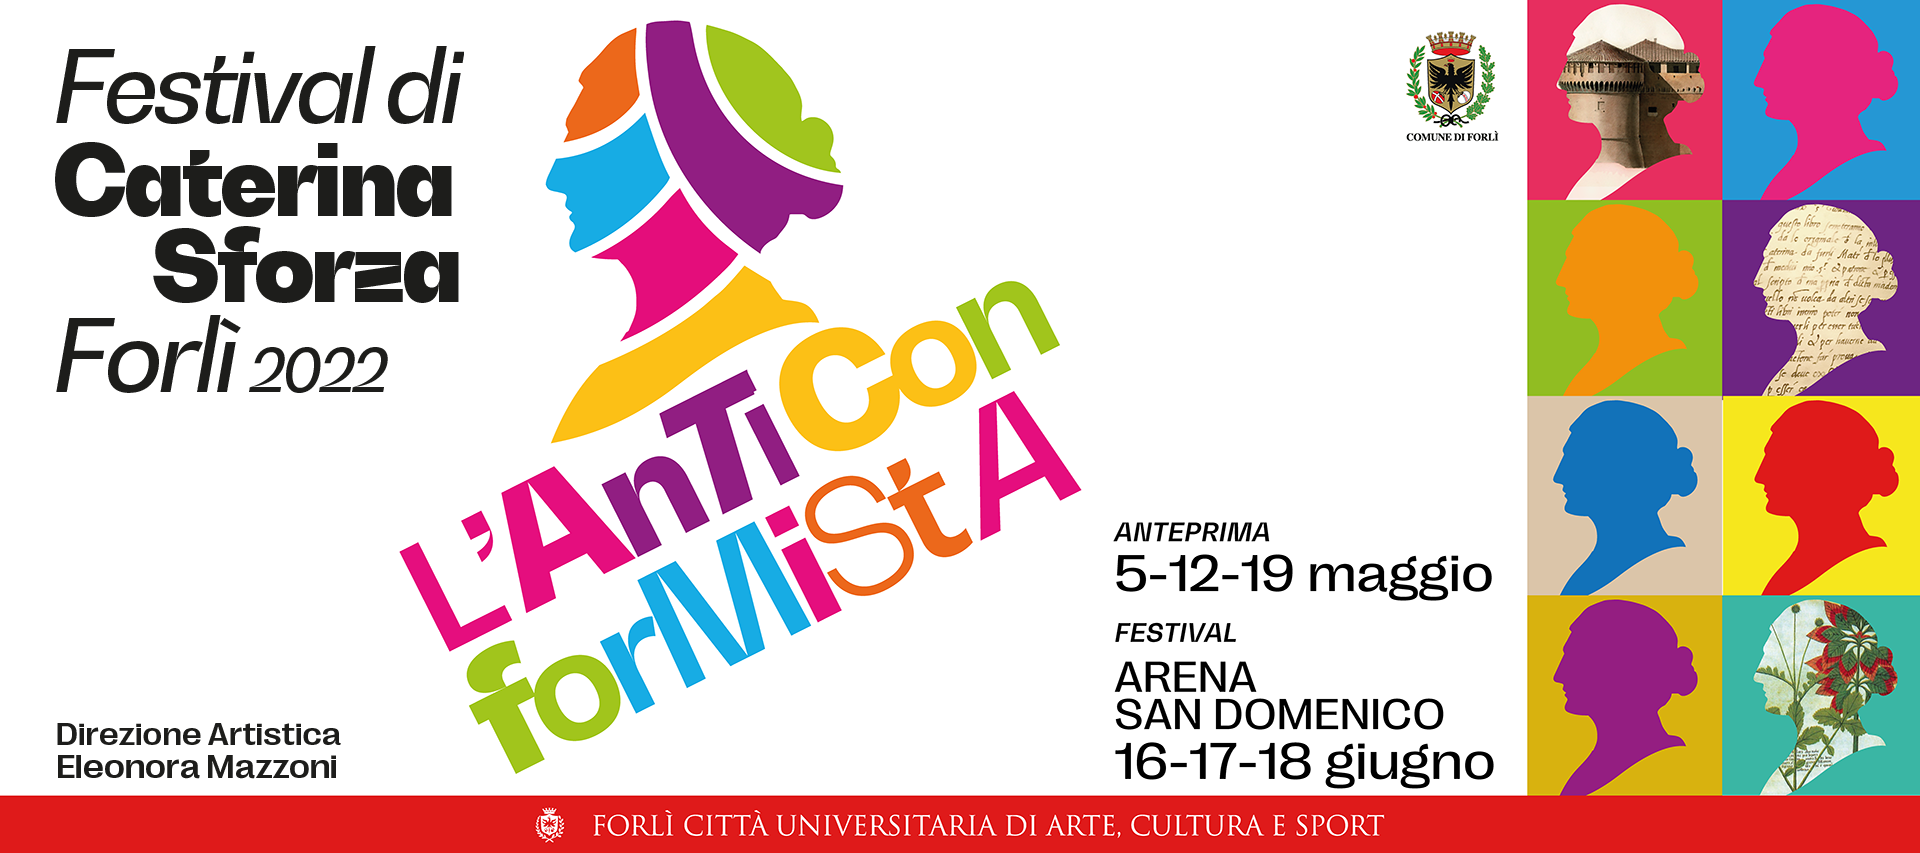 Festival di Caterina Sforza Forlì 2022